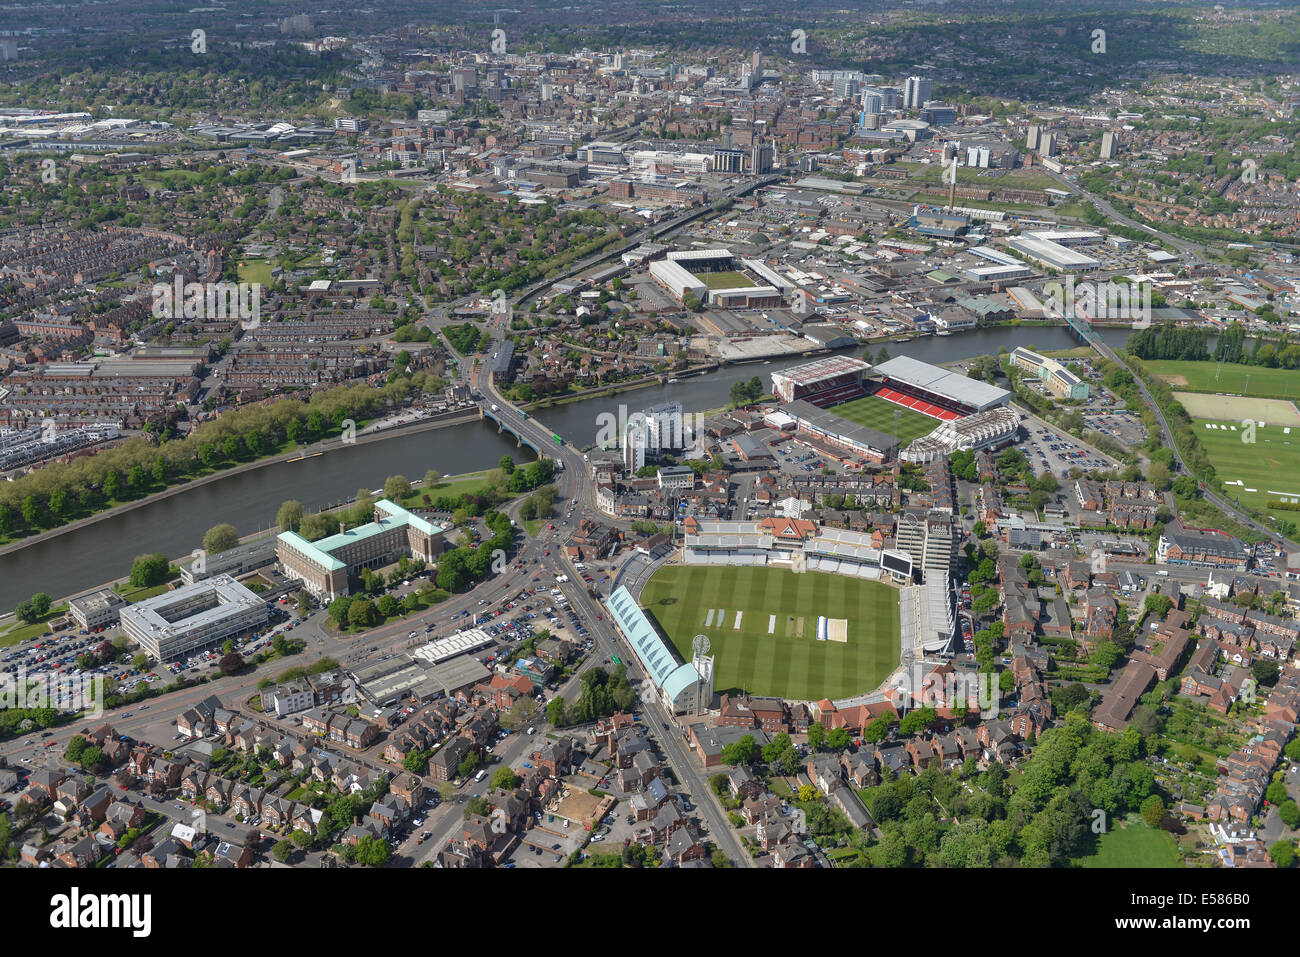 Eine Luftaufnahme von Nottingham Trent Brücke suchen. Fußballplätze und dem Cricket Ground sichtbar, Innenstadt hinter. Stockfoto